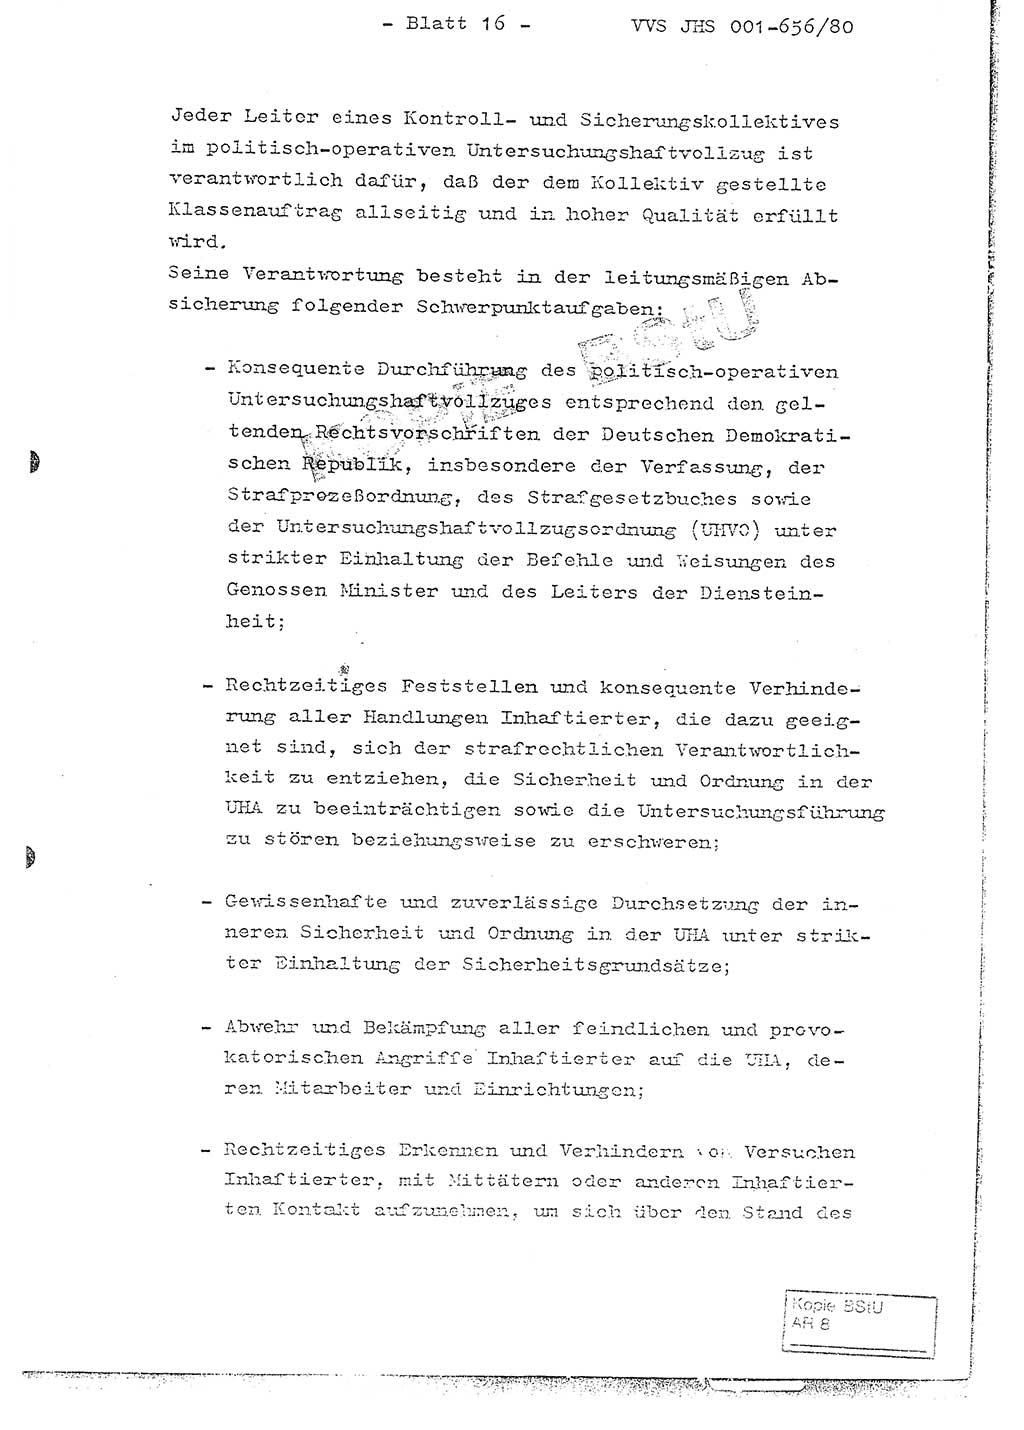 Fachschulabschlußarbeit Unterleutnant Christian Kätzel (Abt. ⅩⅣ), Ministerium für Staatssicherheit (MfS) [Deutsche Demokratische Republik (DDR)], Juristische Hochschule (JHS), Vertrauliche Verschlußsache (VVS) 001-656/80, Potsdam 1980, Blatt 16 (FS-Abschl.-Arb. MfS DDR JHS VVS 001-656/80 1980, Bl. 16)